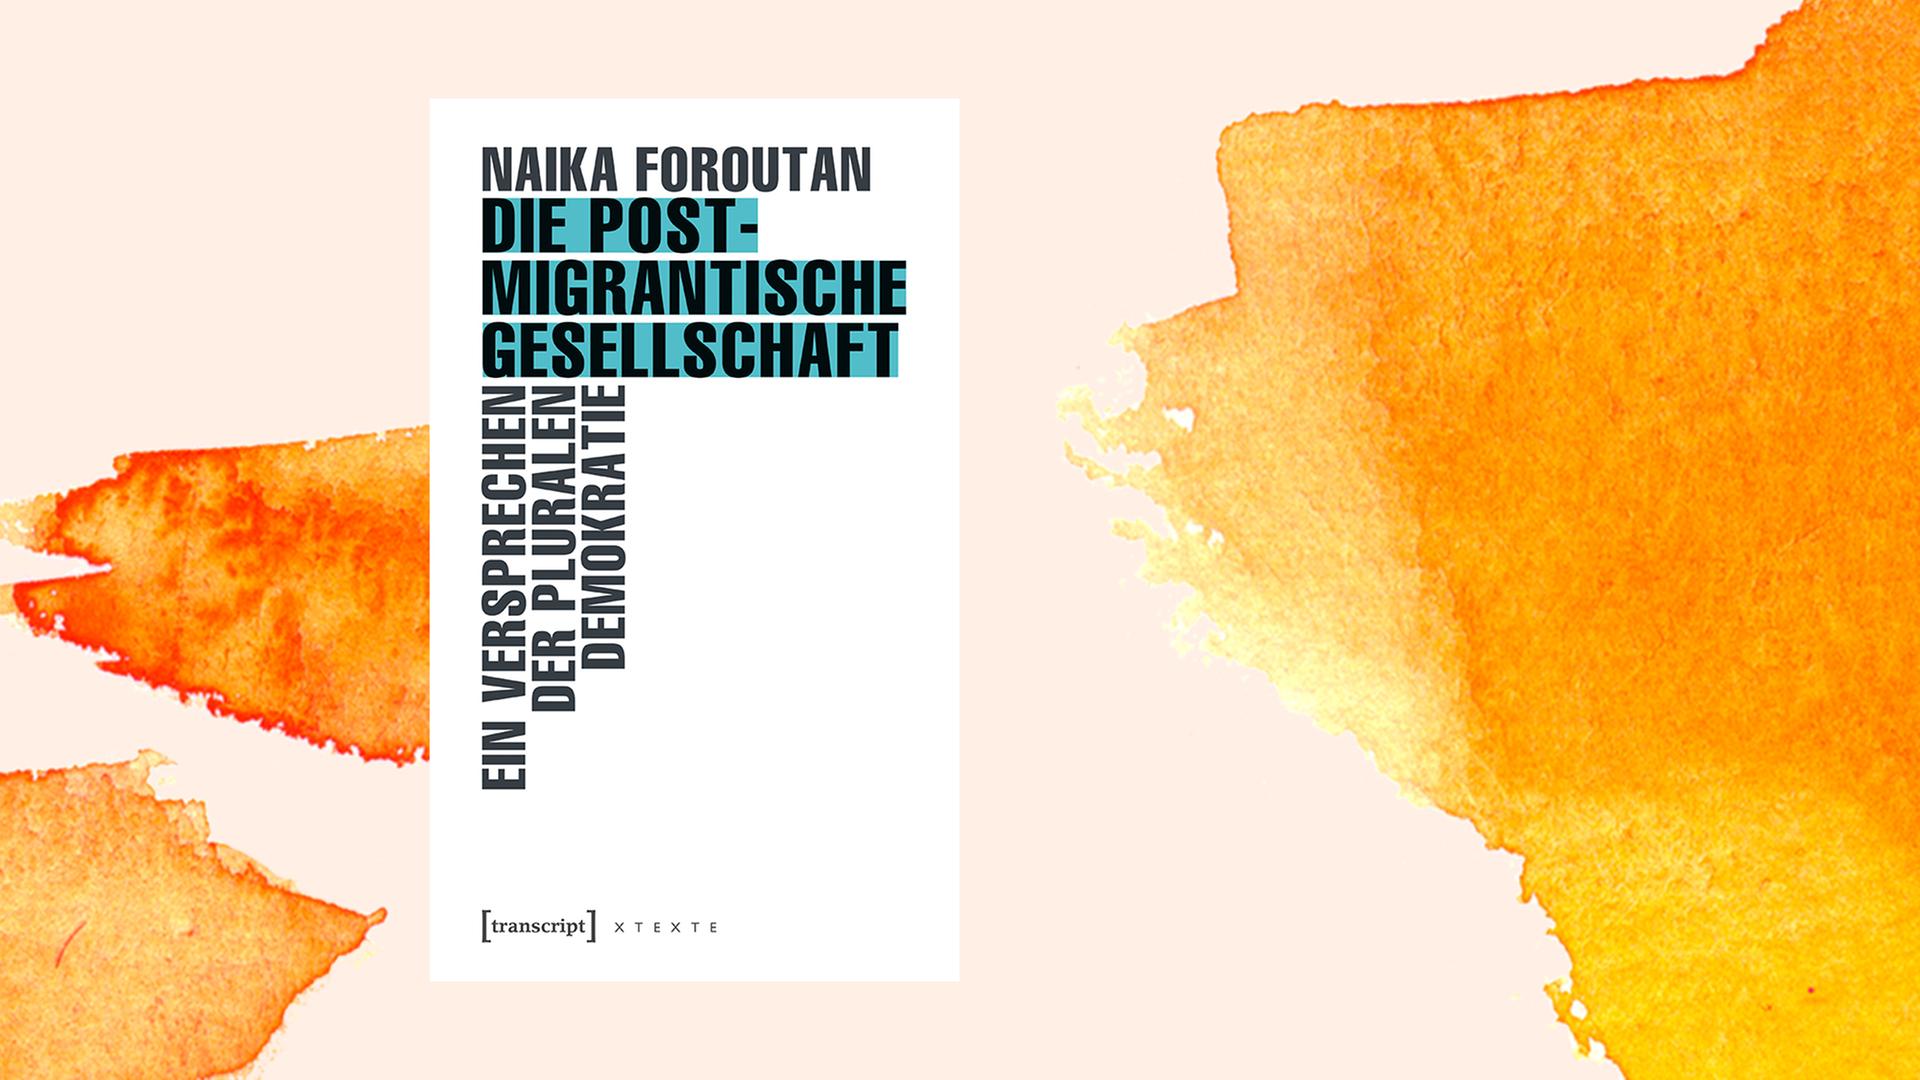 Das Cover des Buchs "Die Postmigrantische Gesellschaft" von Naika Foroutan auf orange illustriertem Hintergrund.